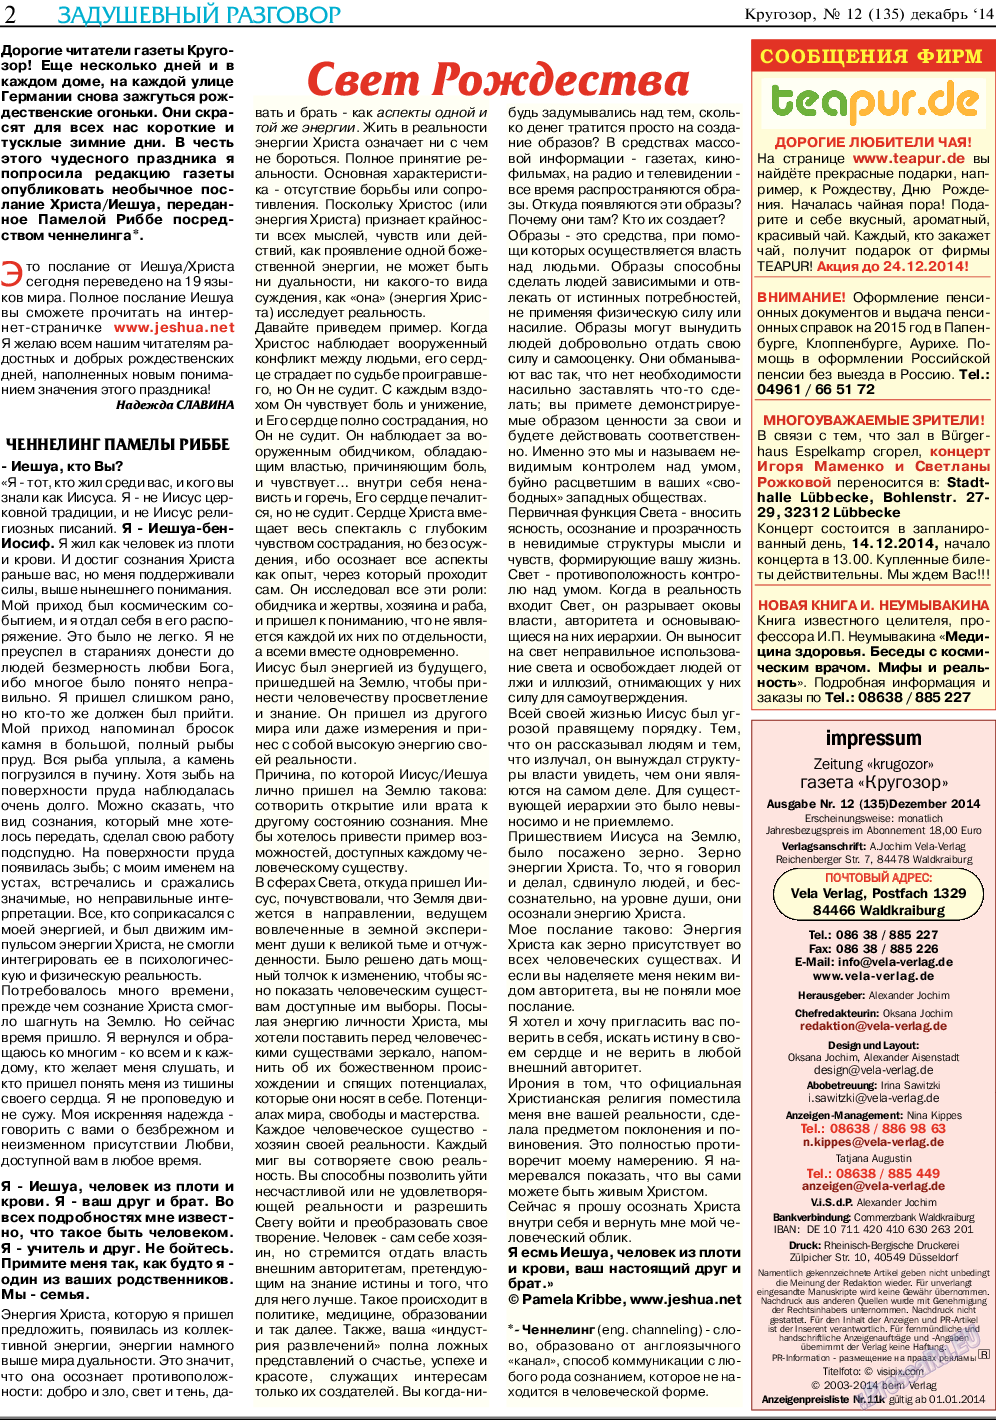 Кругозор (газета). 2014 год, номер 12, стр. 2